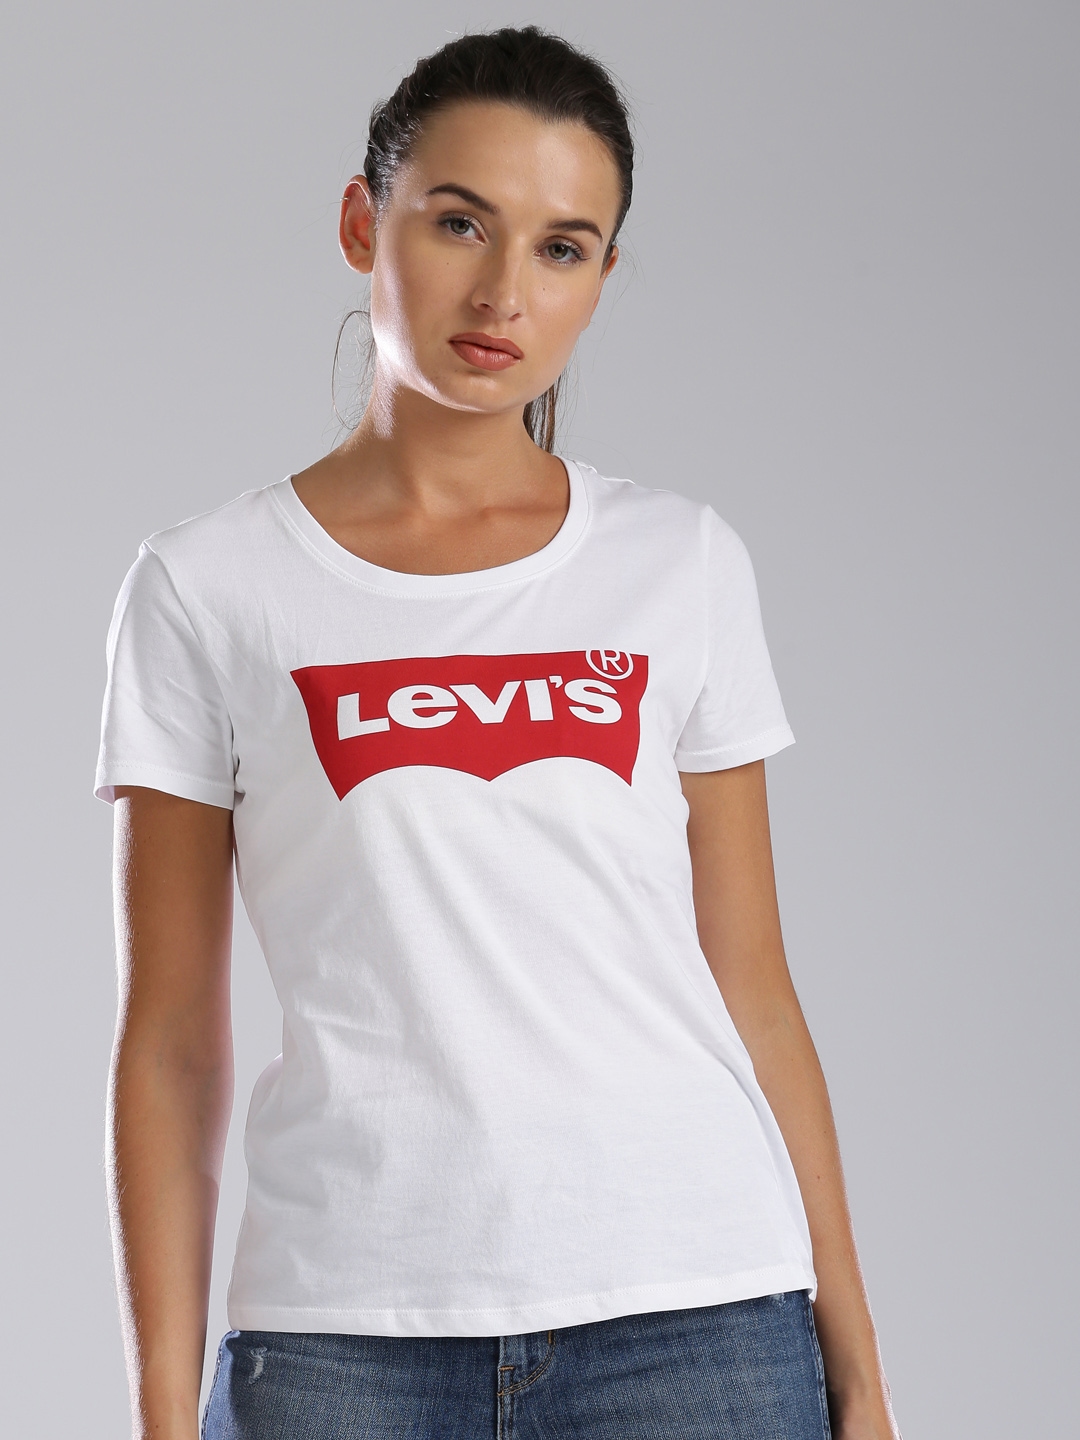 levis t shirt myntra